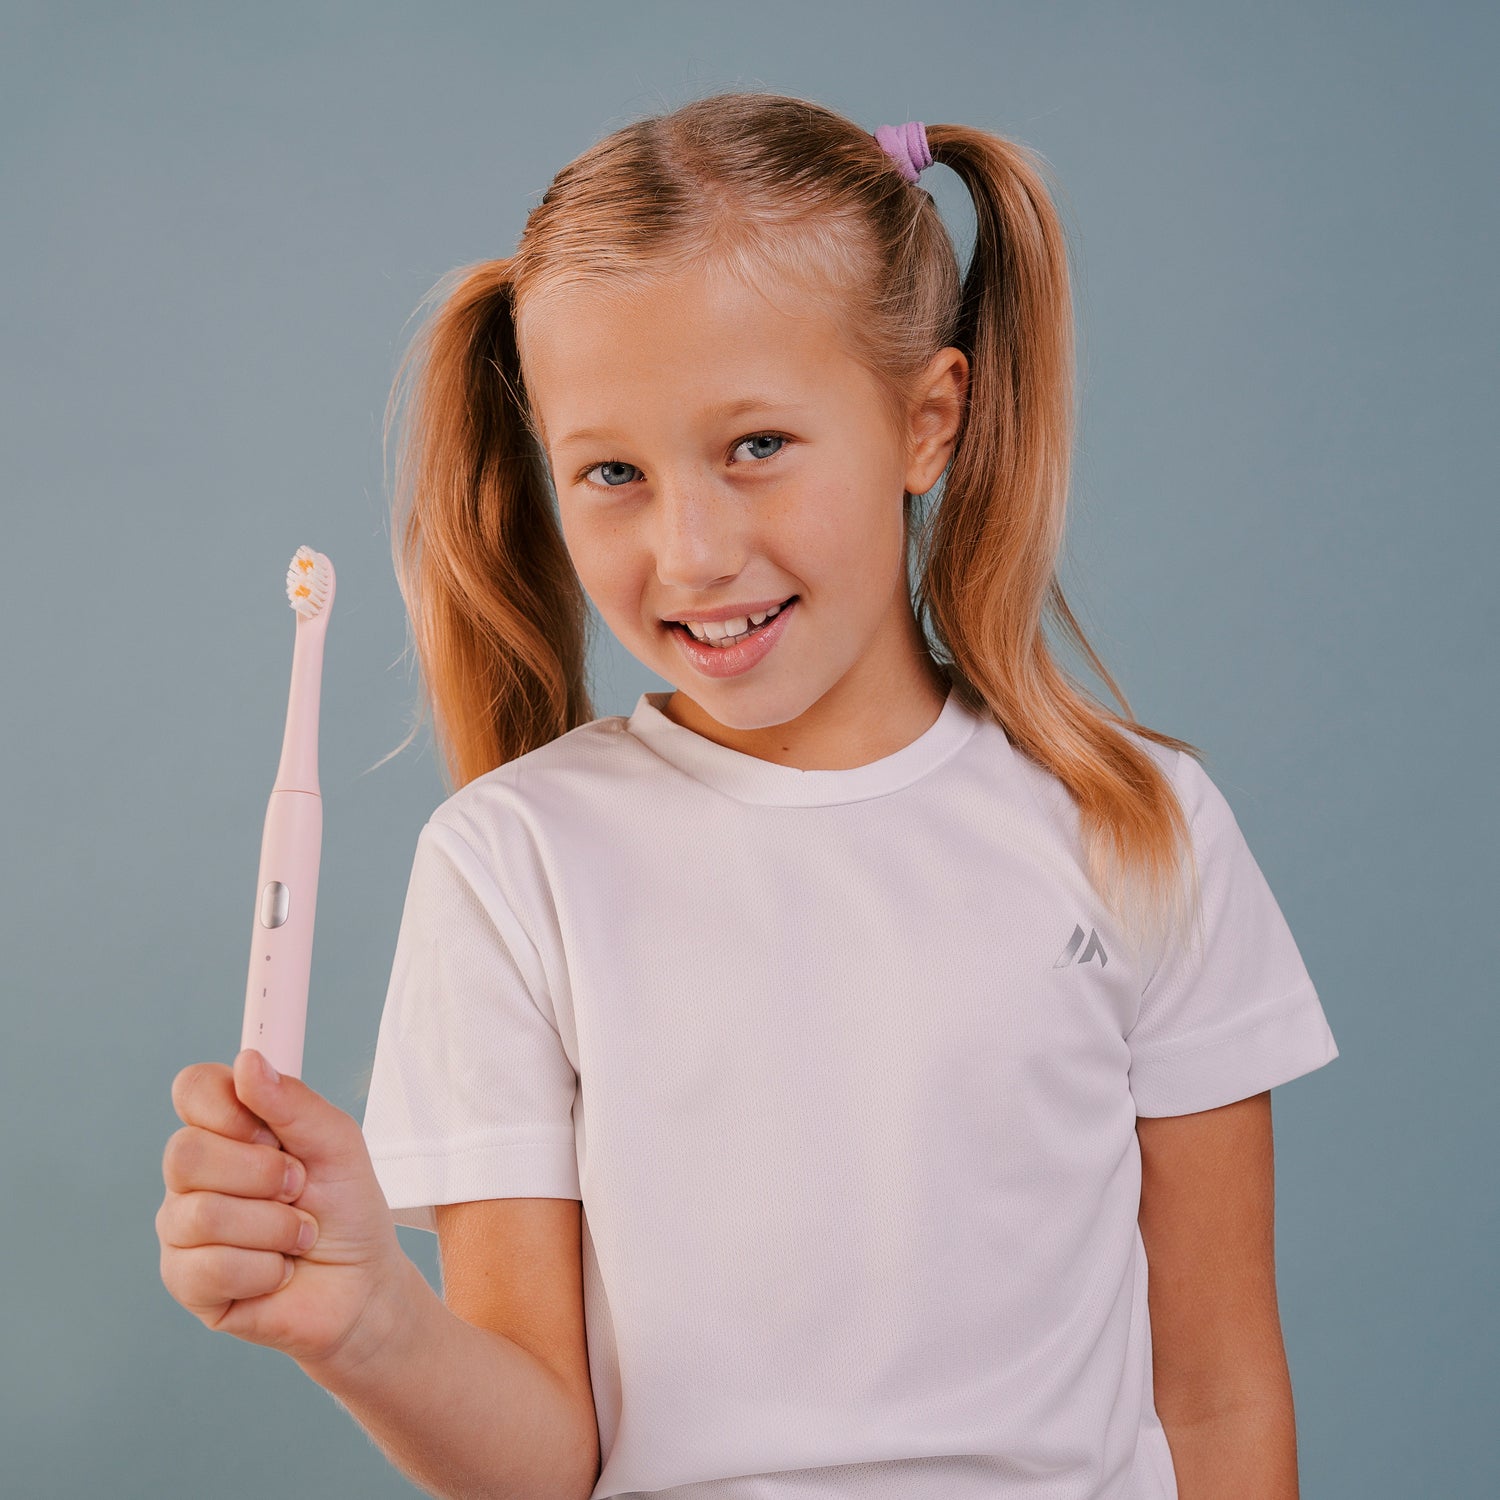 детская электрическая зубная щетка Smiley Light розовая купити дитячу електричну зубну щітку купить детскую электрическую зубную щетку купить электрощетку детскую електрична зубна щітка дитяча электрощетка зубная детская